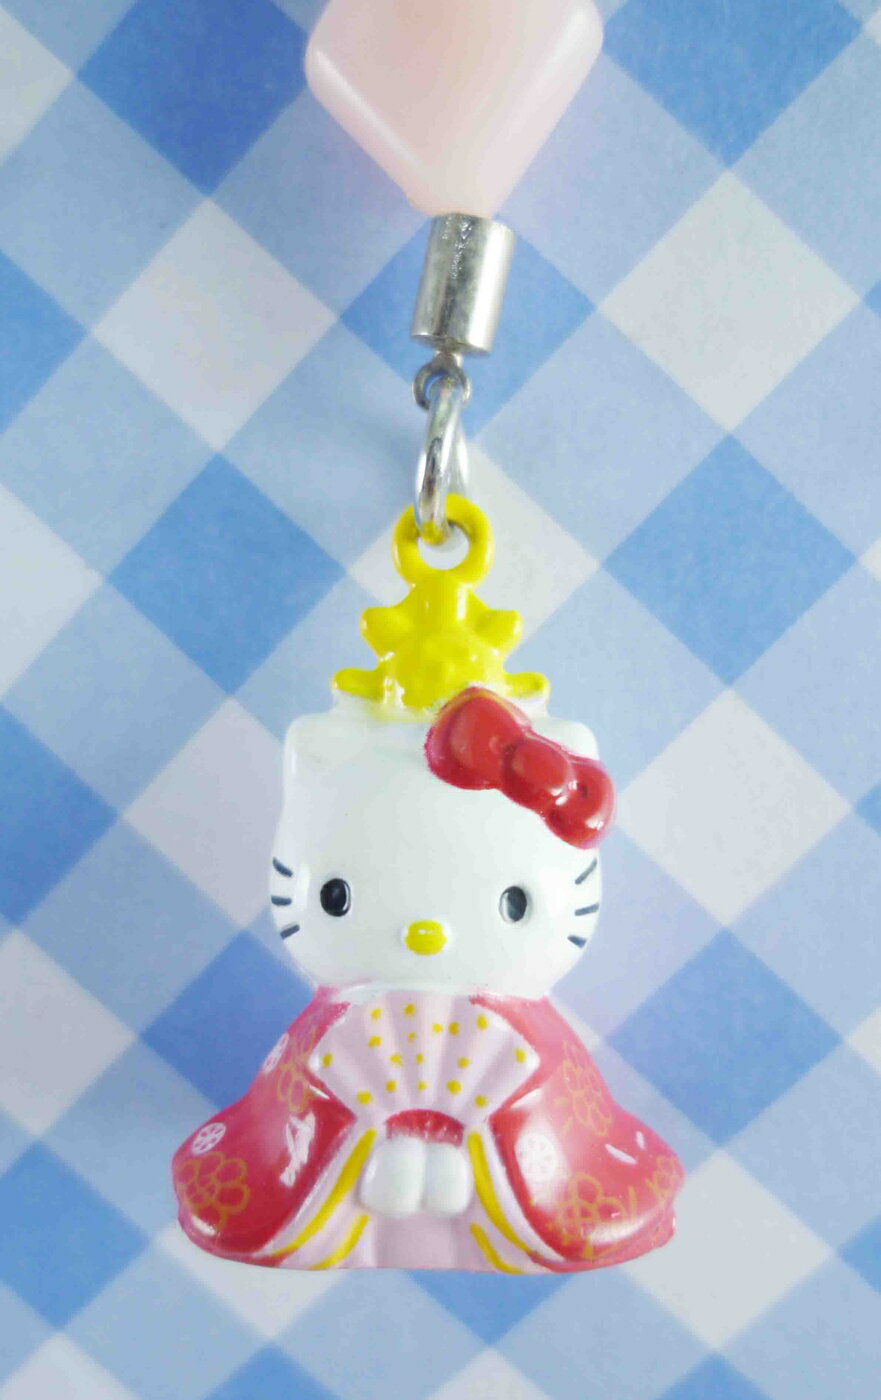 【震撼精品百貨】Hello Kitty 凱蒂貓 KITTY手機吊飾-和風系列-凱蒂貓女兒節雛人形 震撼日式精品百貨